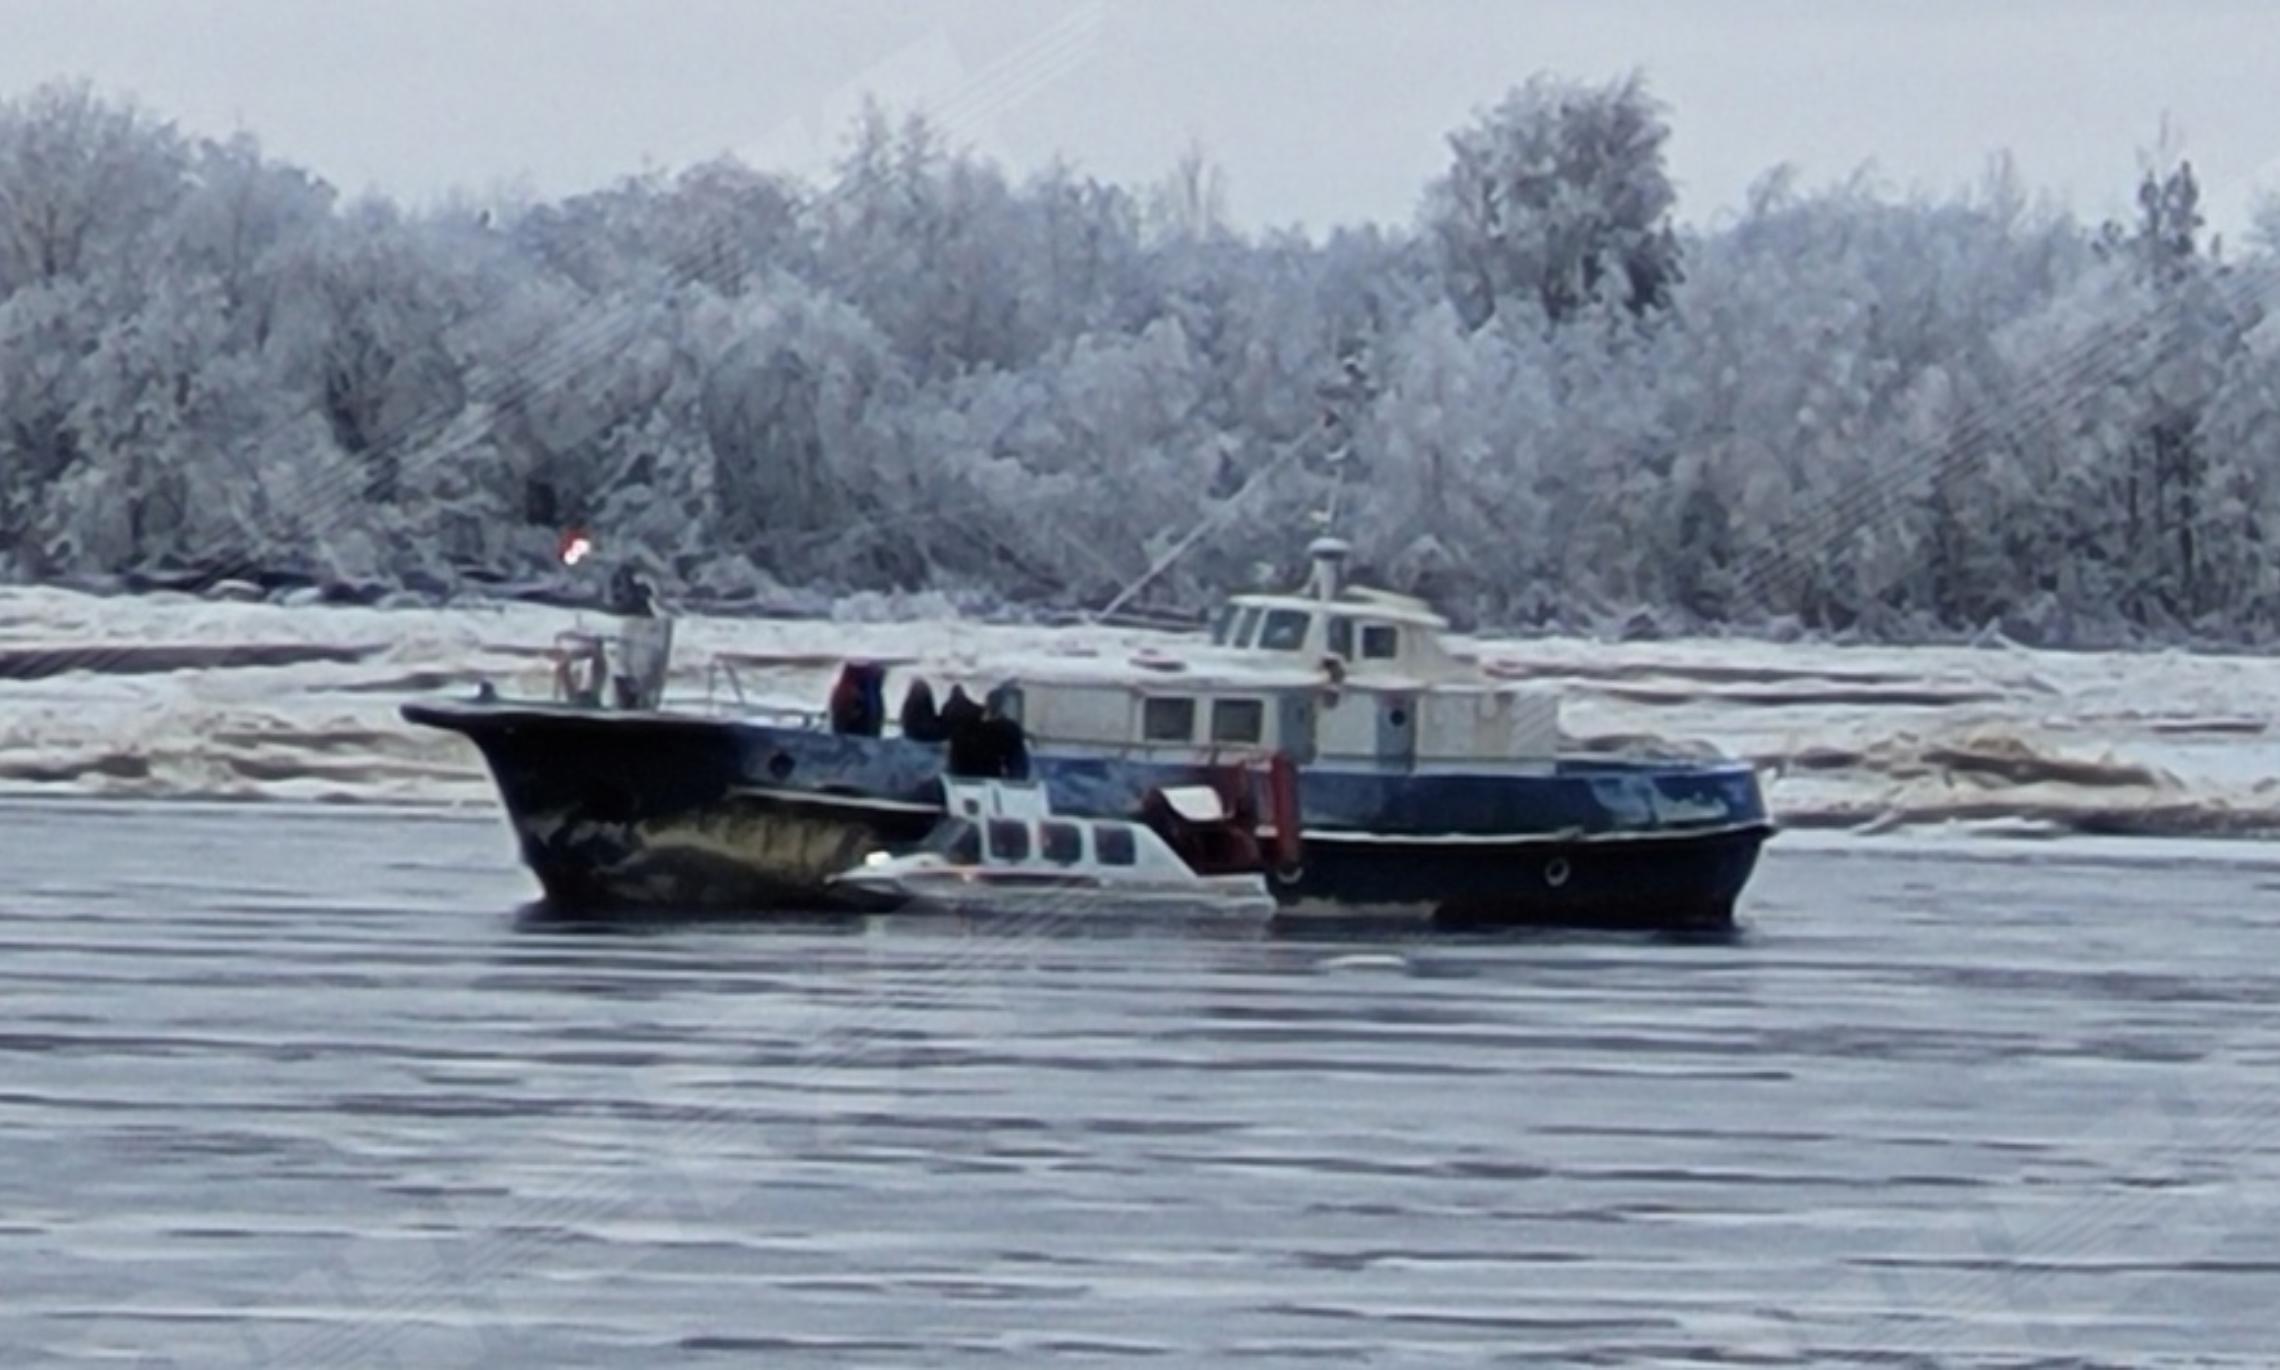 Теплоход «Капитан Митягин», застрявший с пассажирами посреди реки Онега, продолжает работу